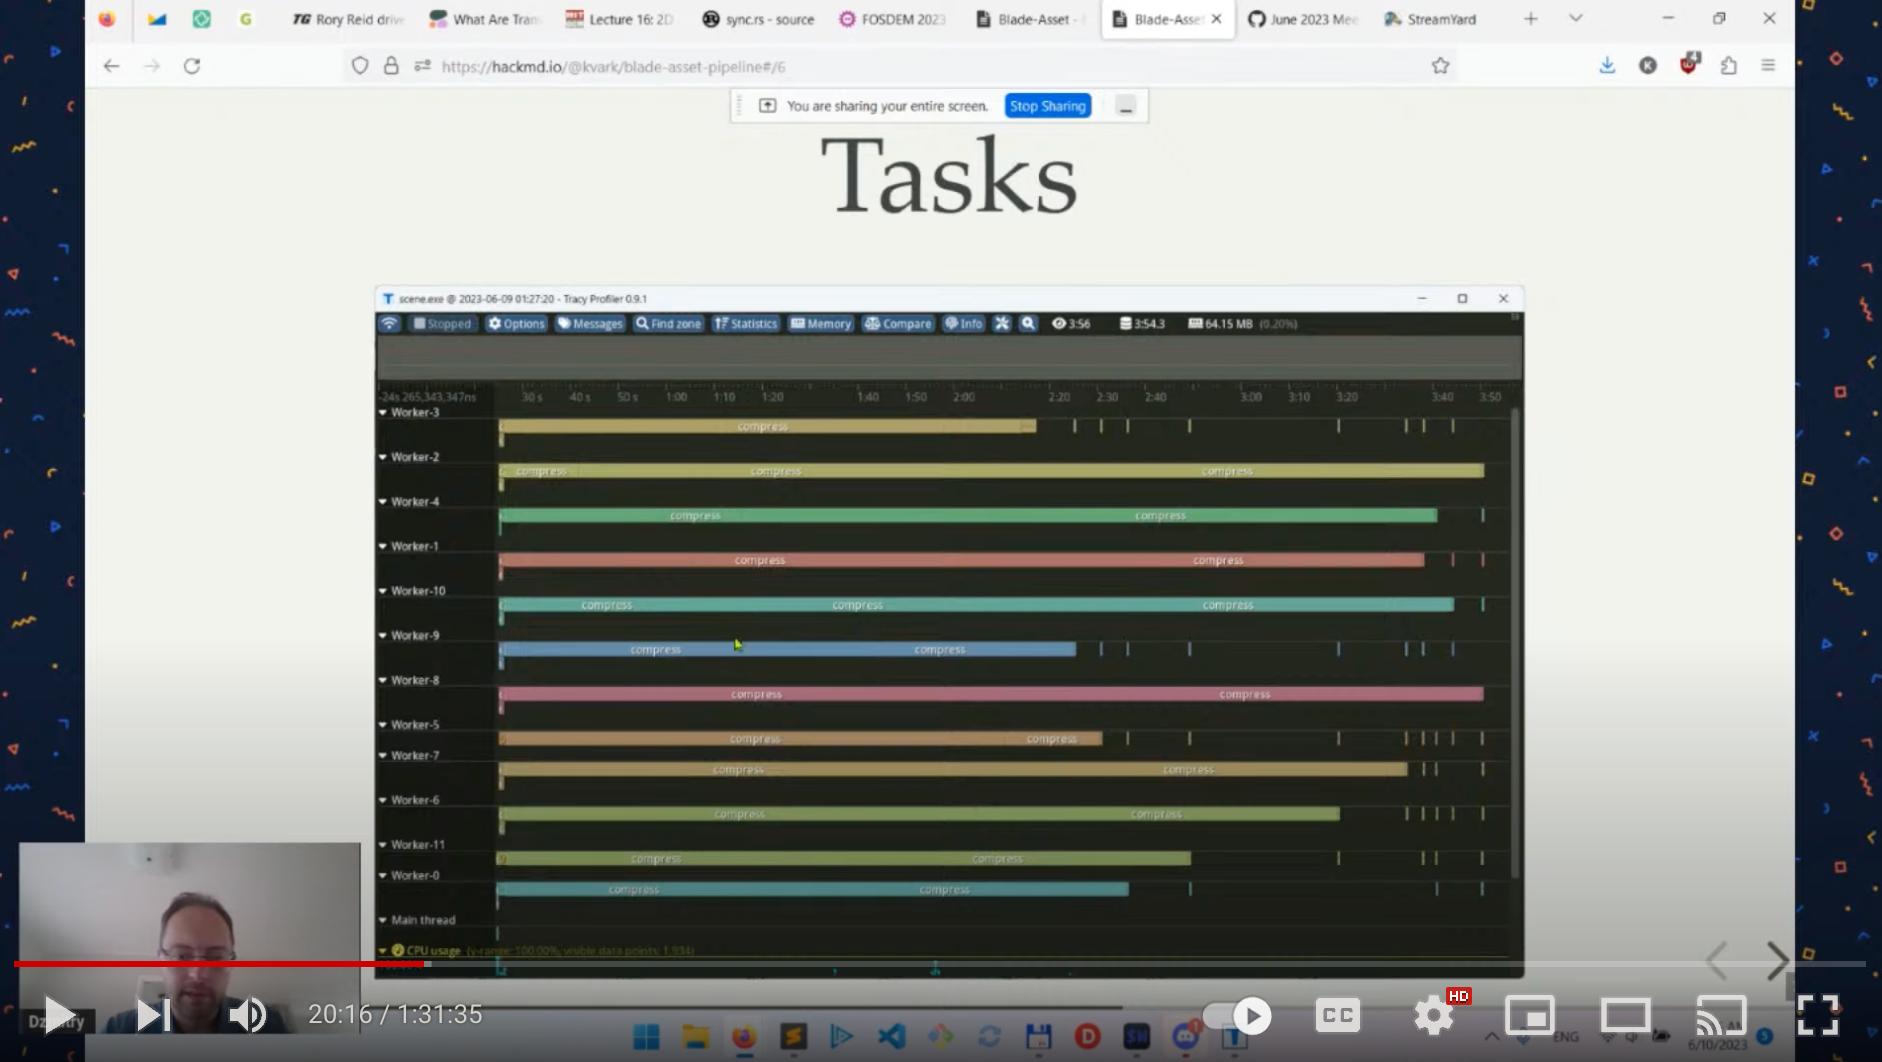 youtube preview: "blade tasks" slide